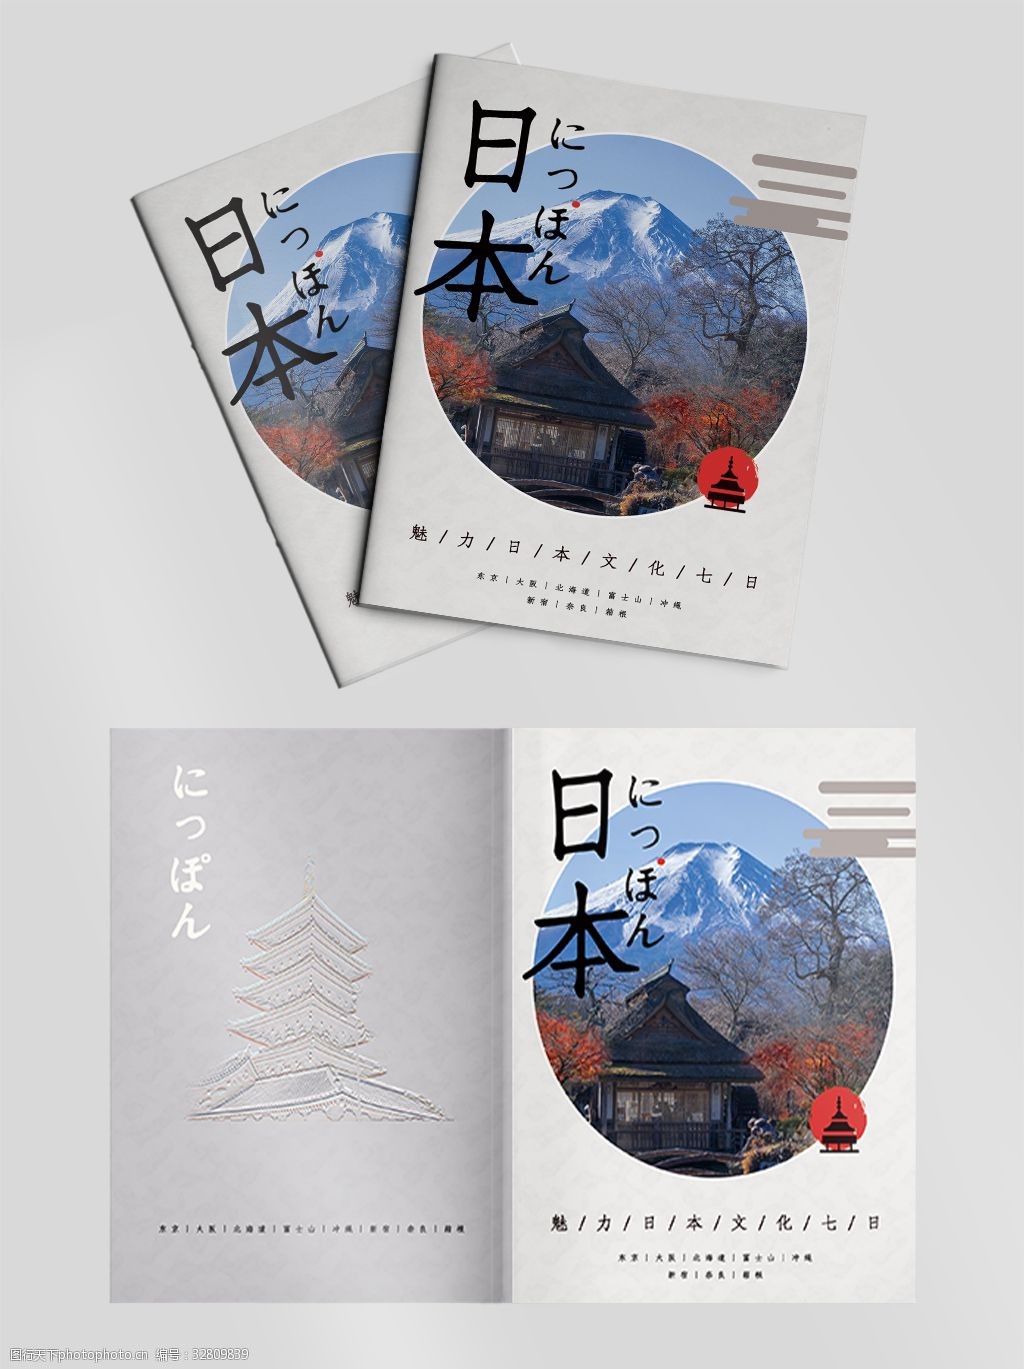 关键词:日本旅游画册封面修改 日本 旅游 旅游画册 郊游 画册设计